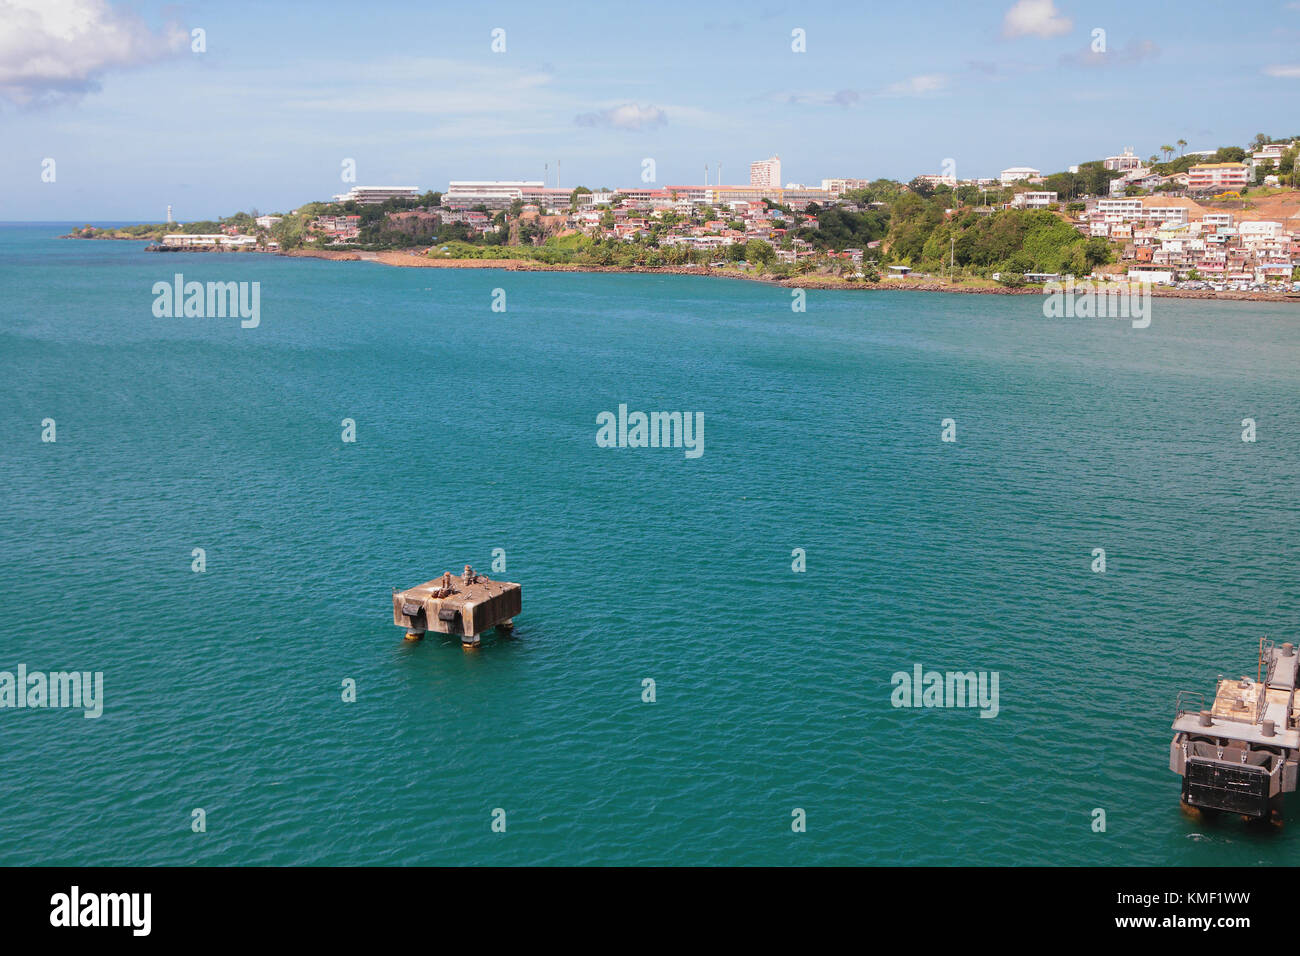 Sea gulf and city ashore. Fort-de-Frans, Martinique Stock Photo